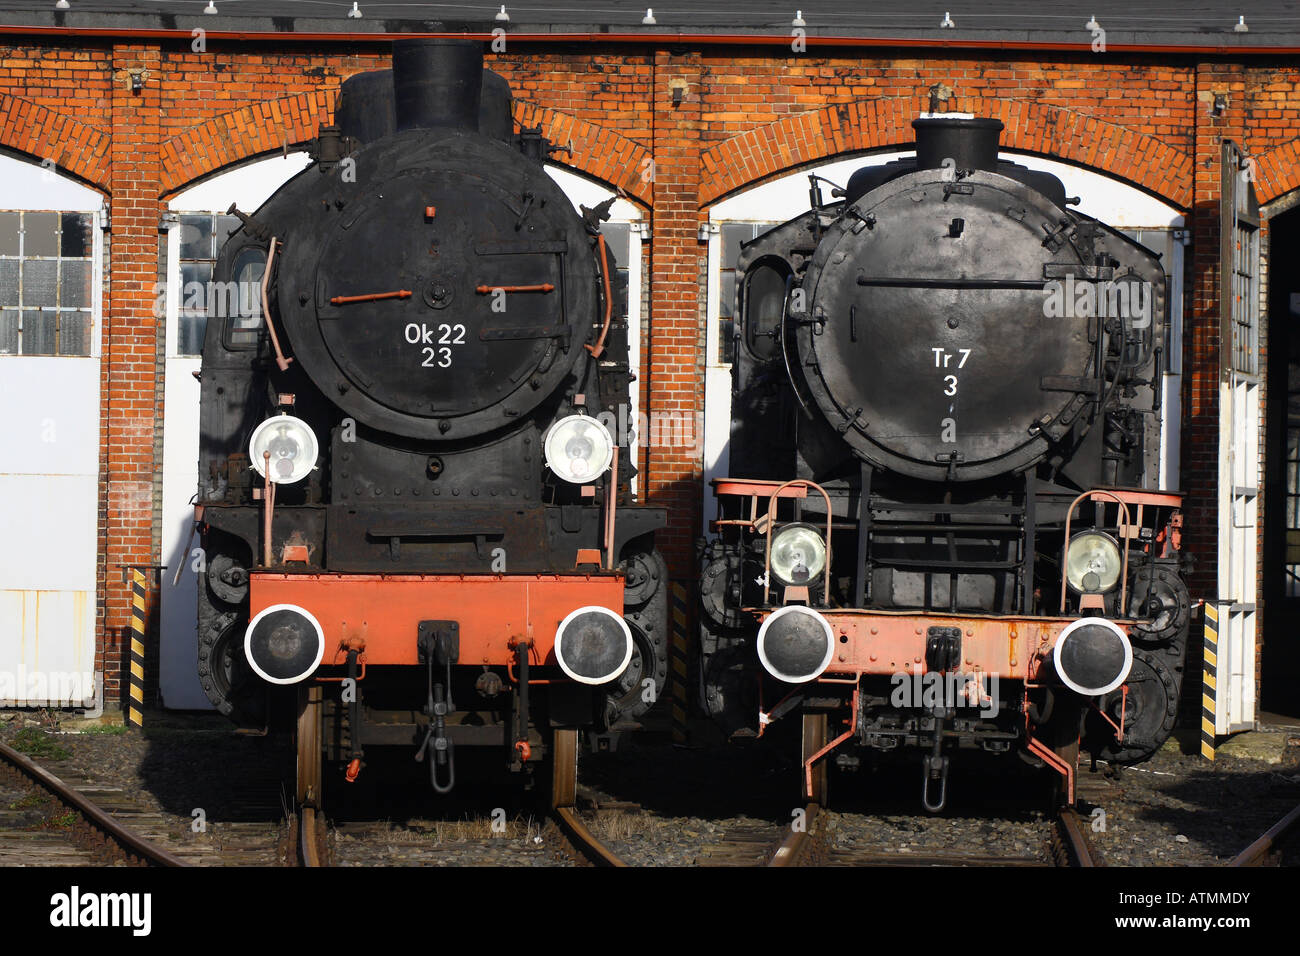 Dampflokomotiven Sie Motoren Tr 7 und Ok22 aus dem Jahr 1922 Stockfoto